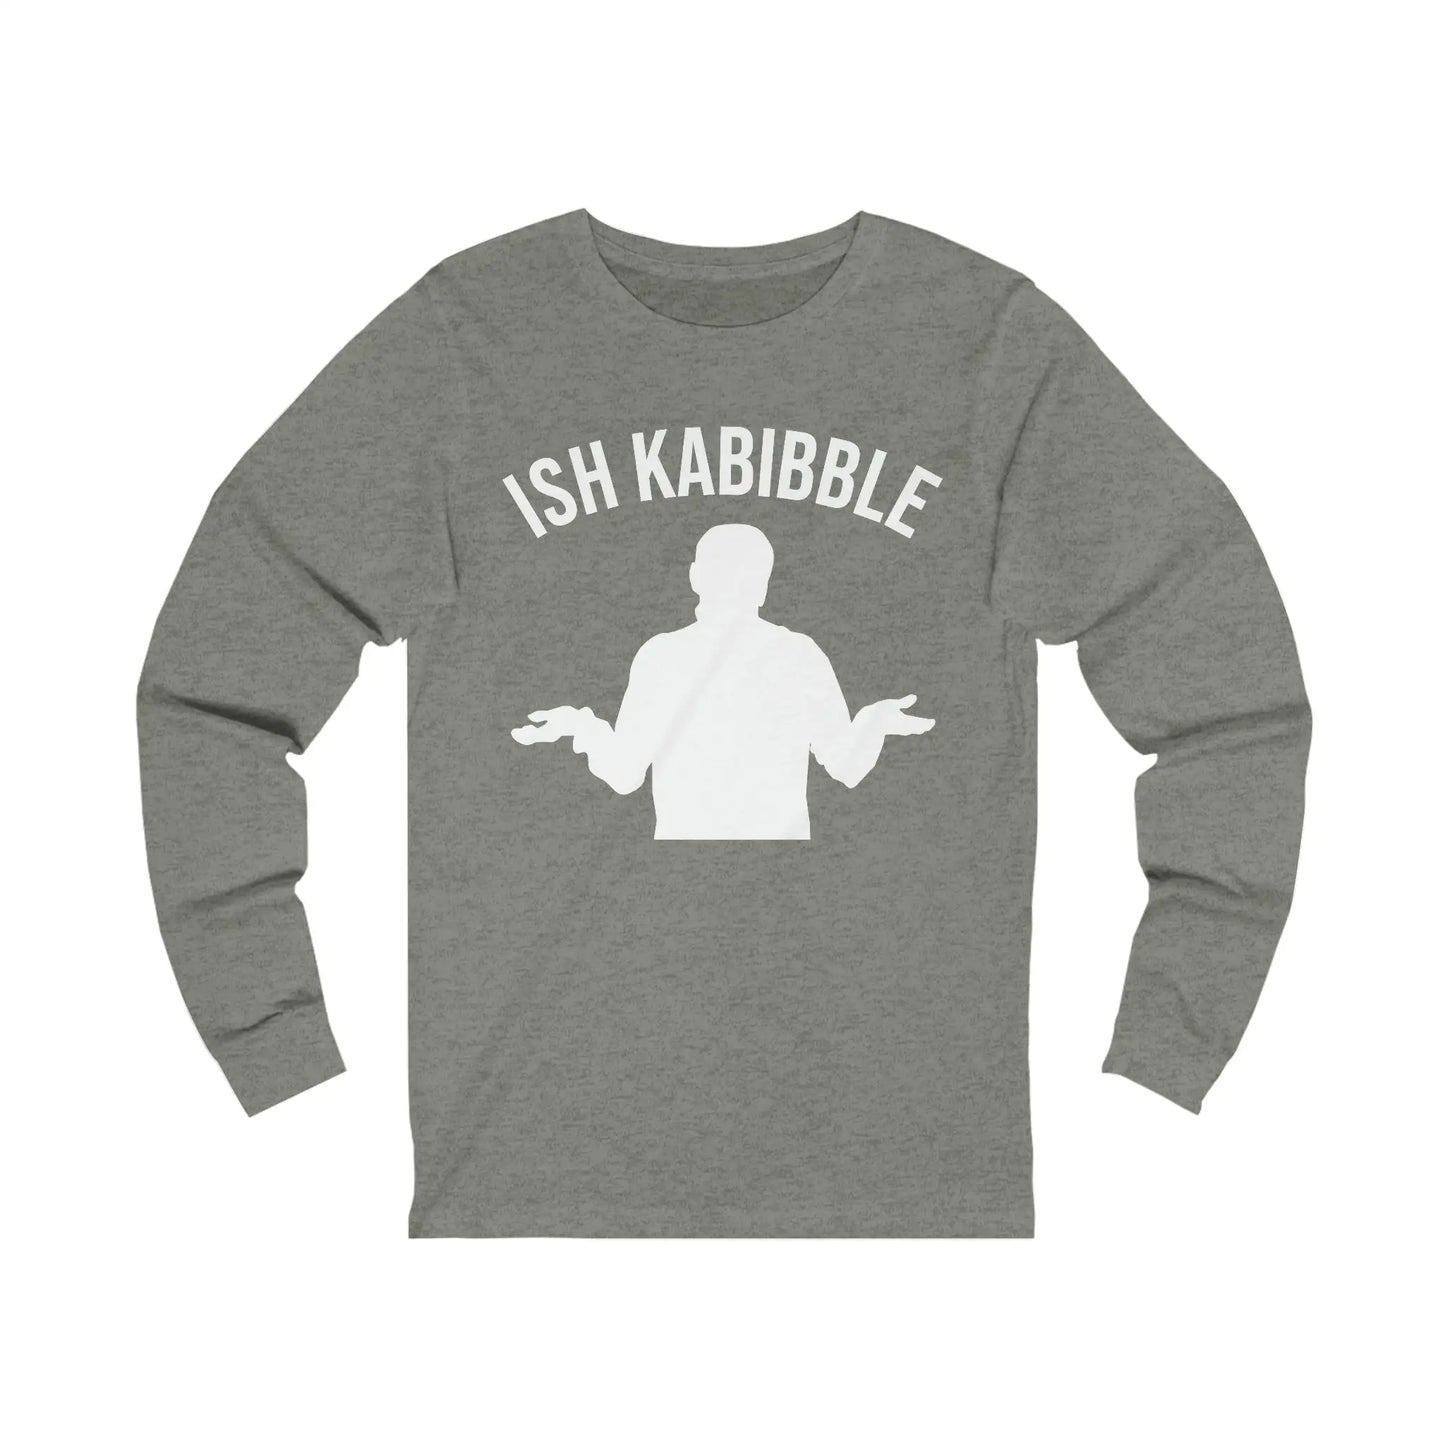 Ish Kabibble Men's Long Sleeve Tee - Wicked Tees